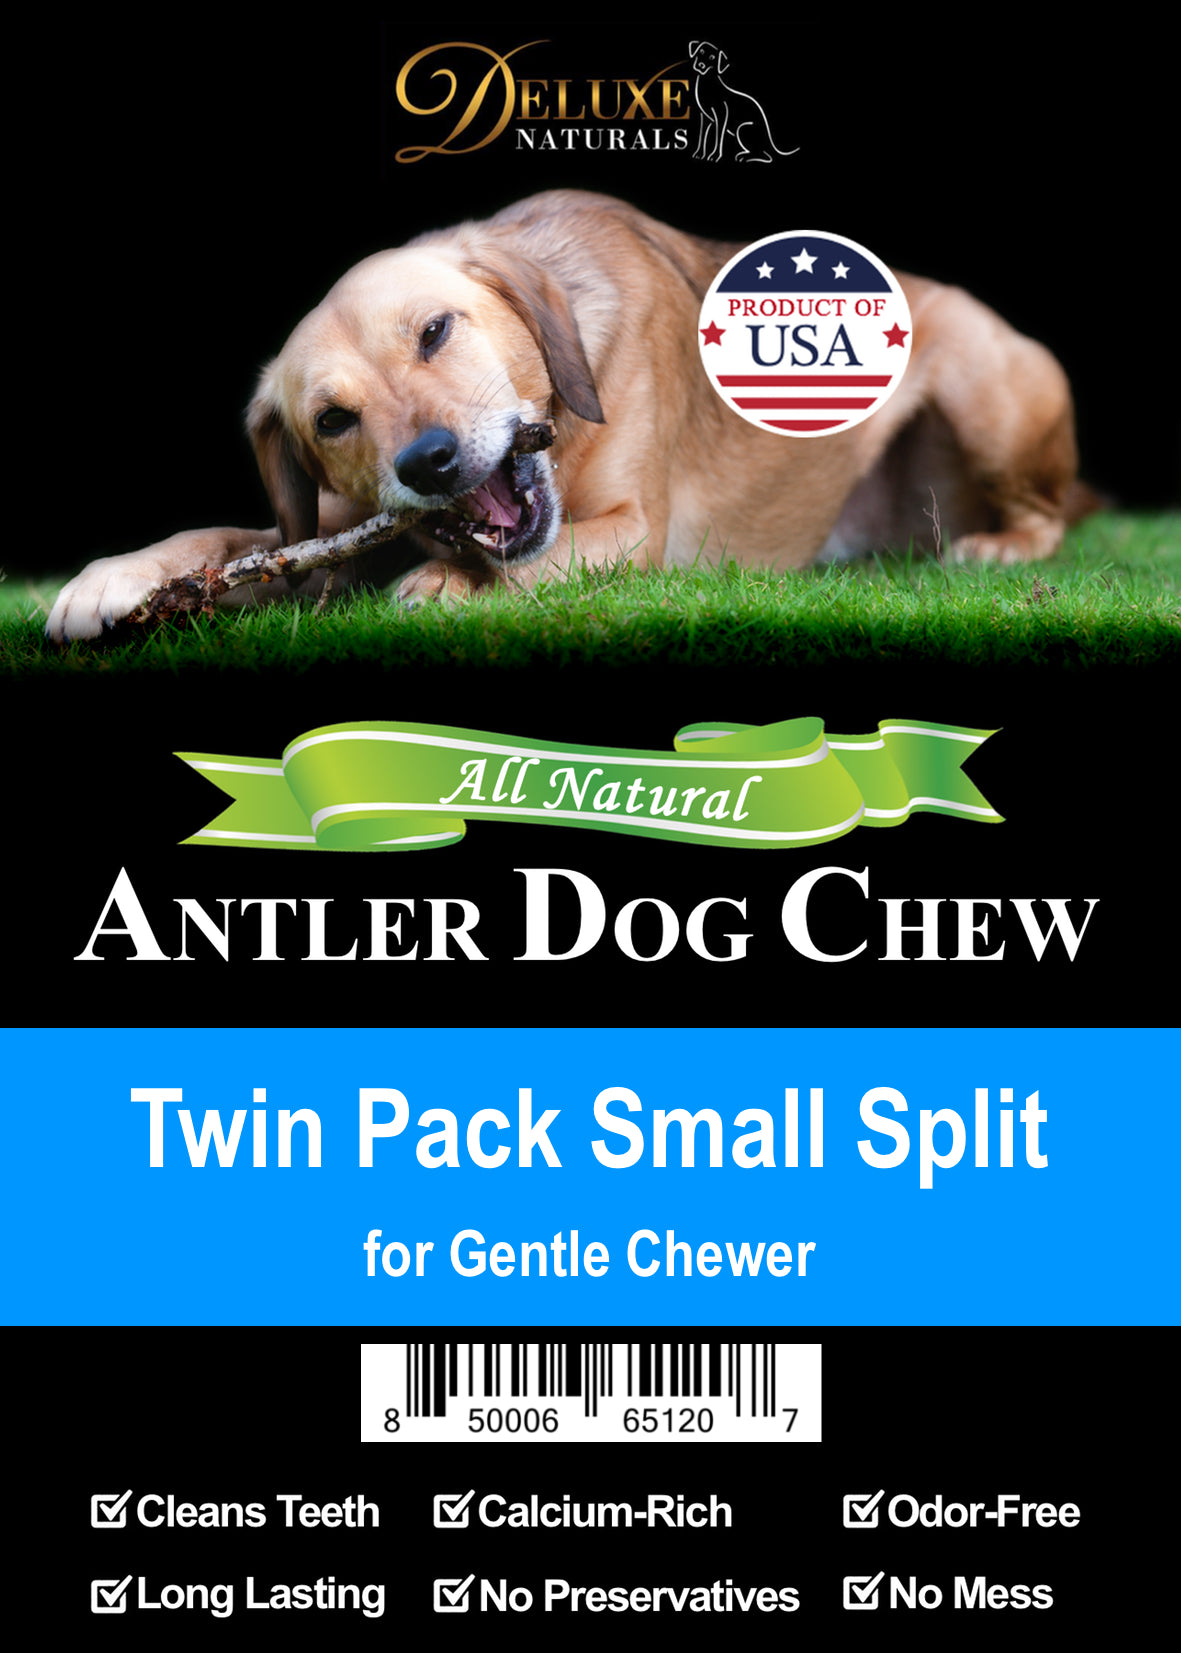 Deluxe Naturals Twin Pack Elk Antler Dog Chew - Small Split